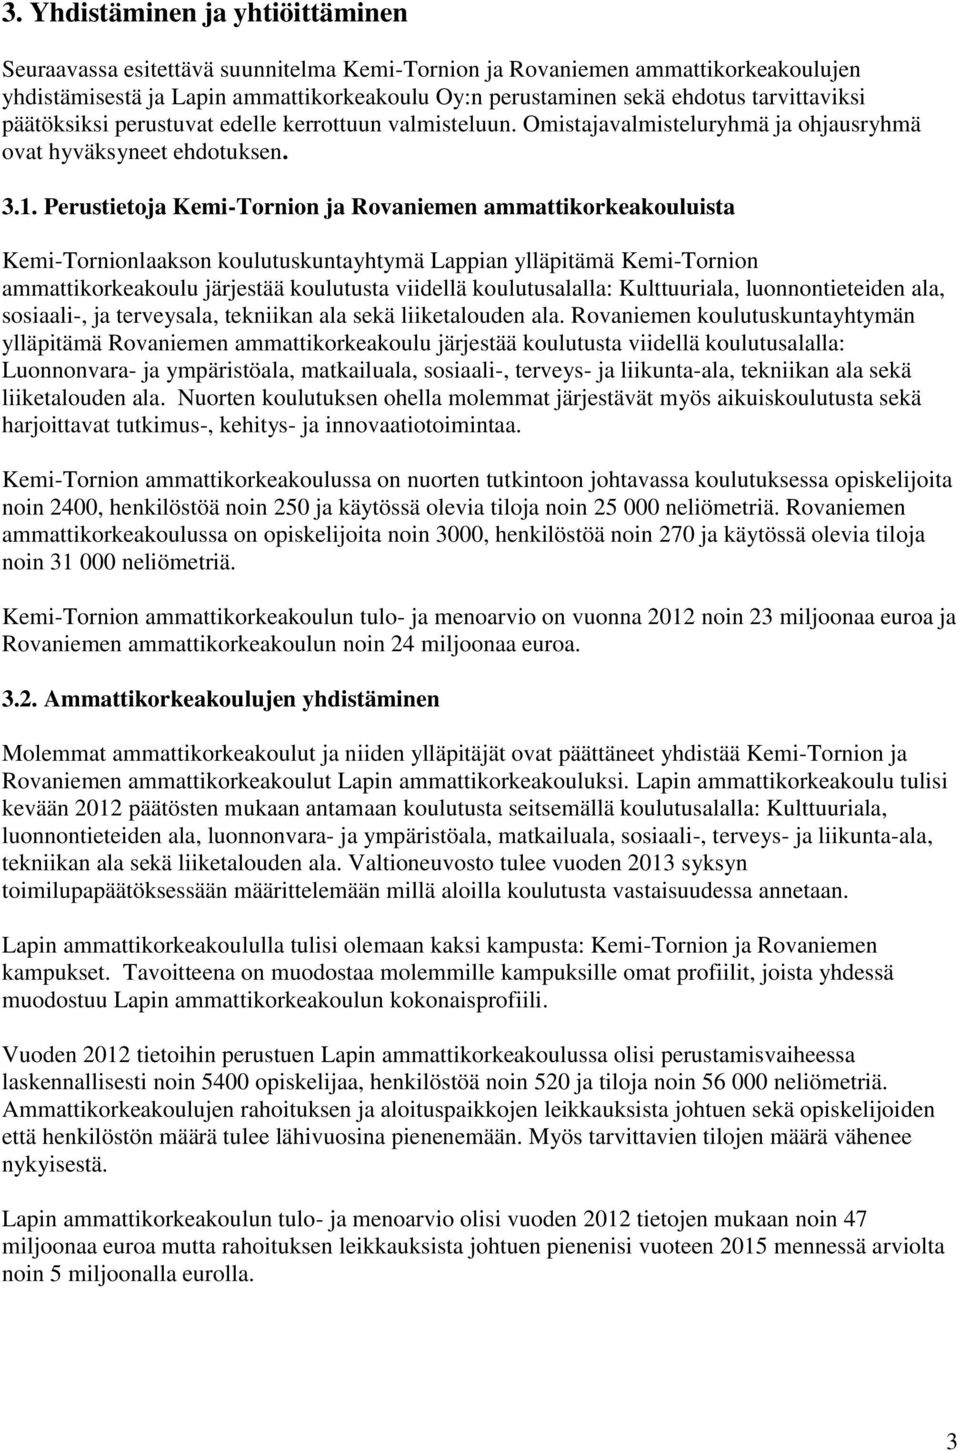 Perustietoja Kemi-Tornion ja Rovaniemen ammattikorkeakouluista Kemi-Tornionlaakson koulutuskuntayhtymä Lappian ylläpitämä Kemi-Tornion ammattikorkeakoulu järjestää koulutusta viidellä koulutusalalla: